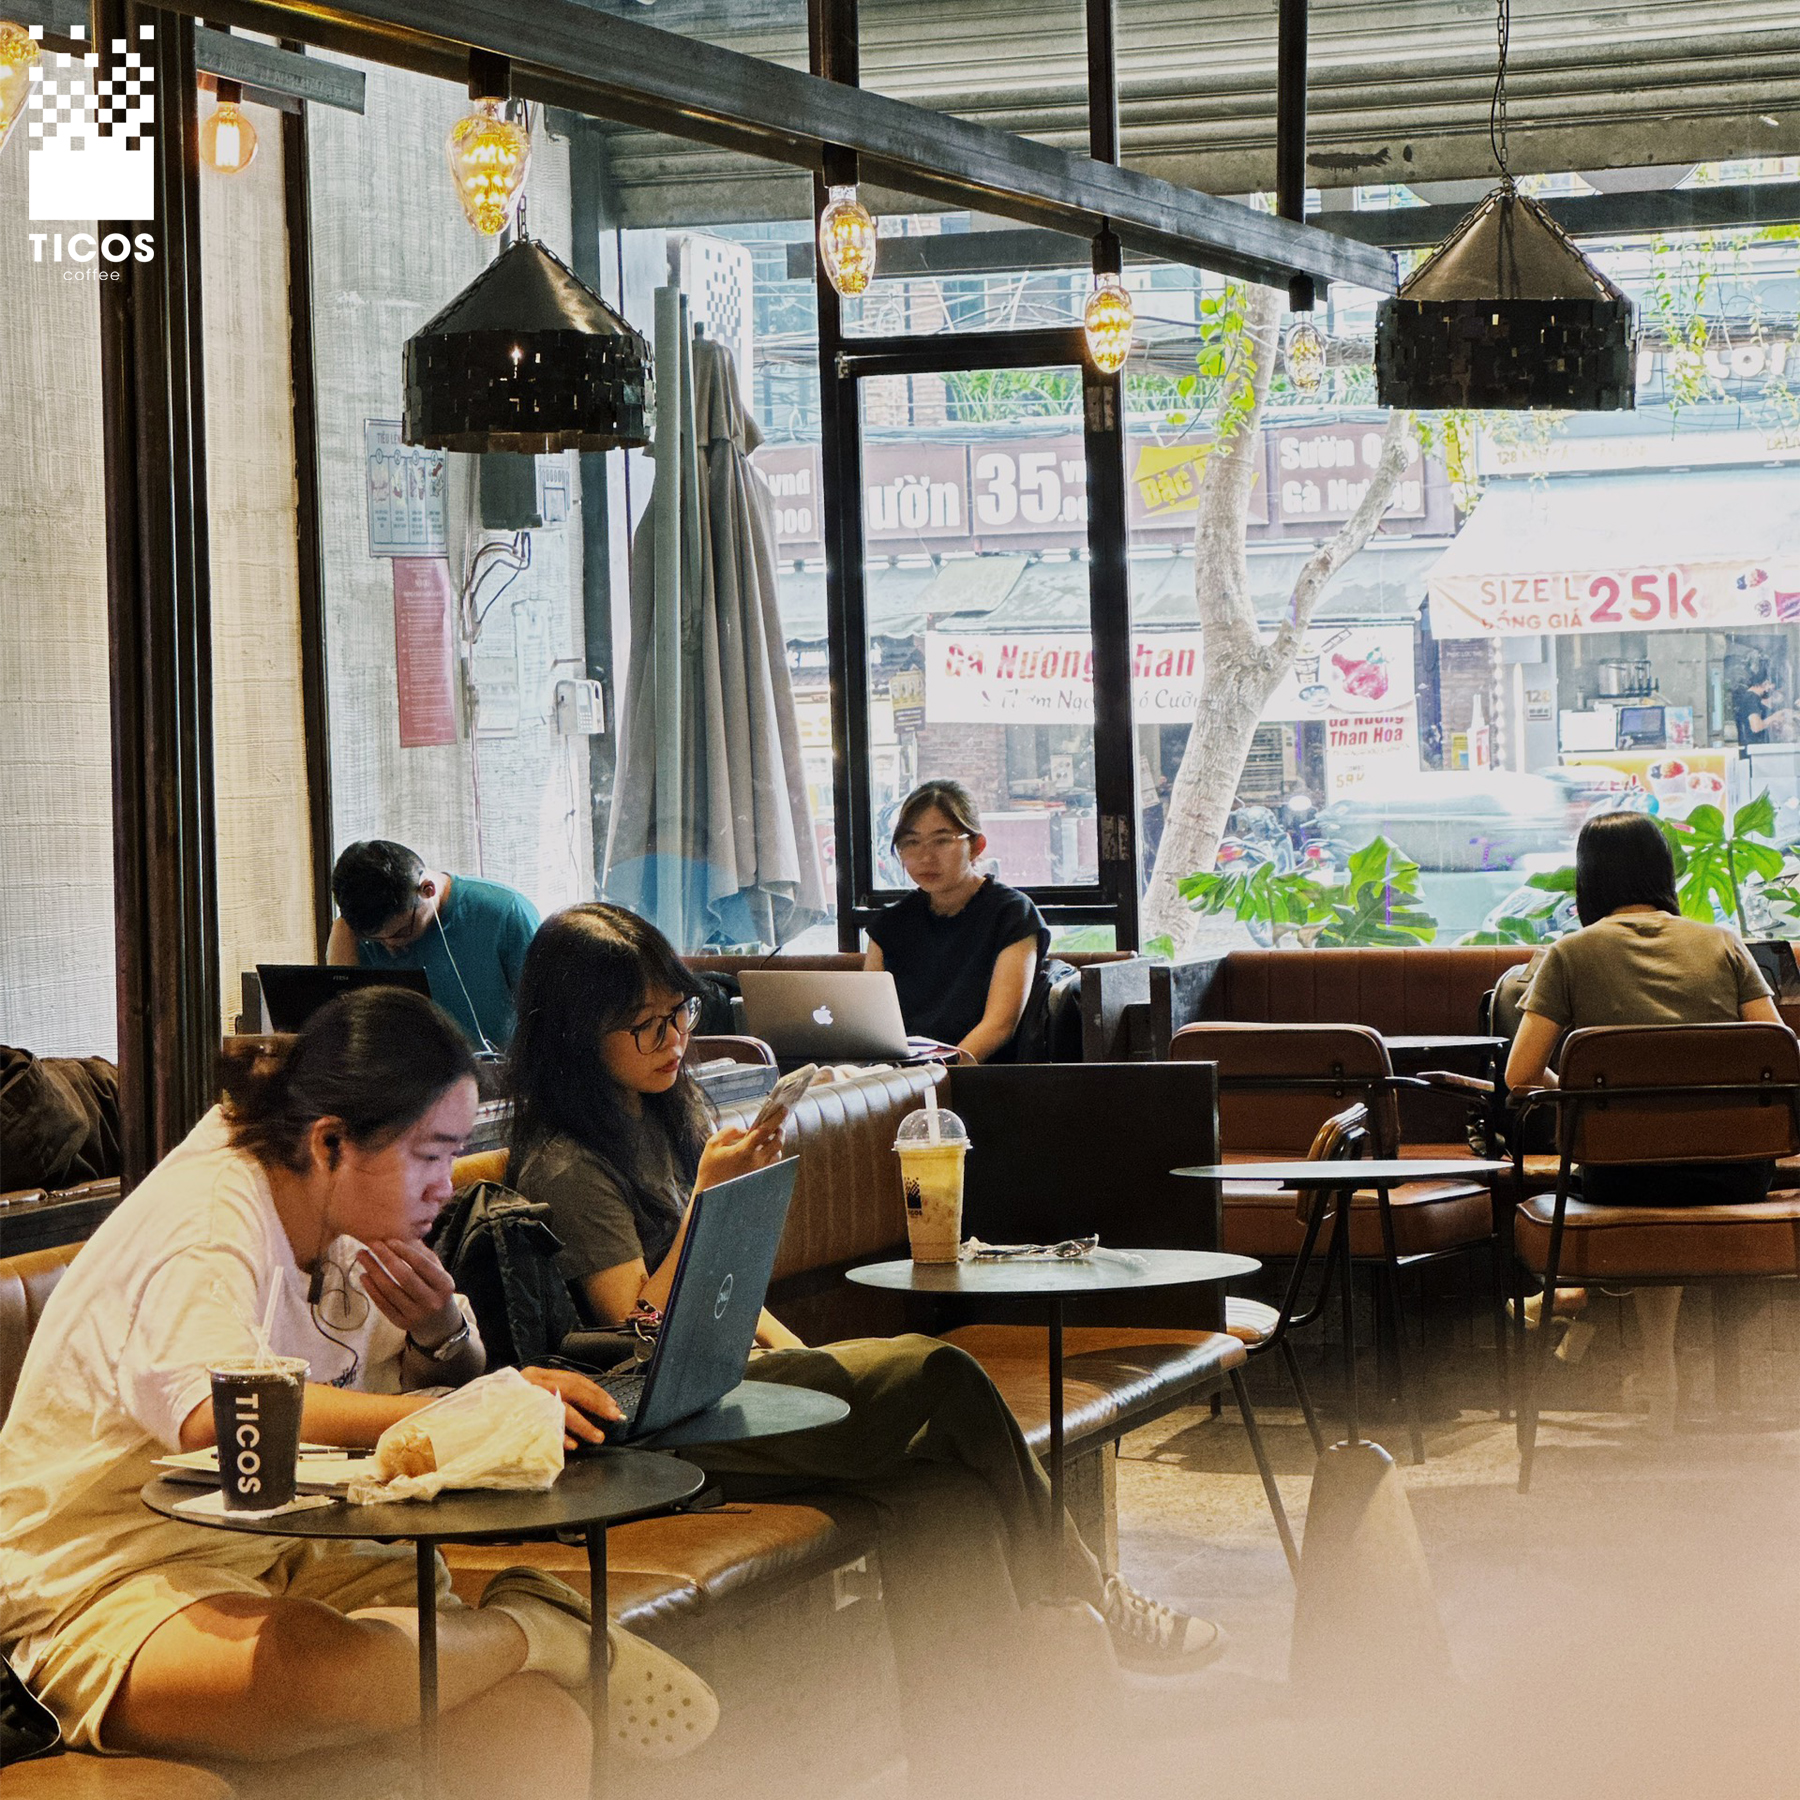 Ticos Coffee có không gian ấm cúng, yên tĩnh, thích hợp cho các bạn học bài